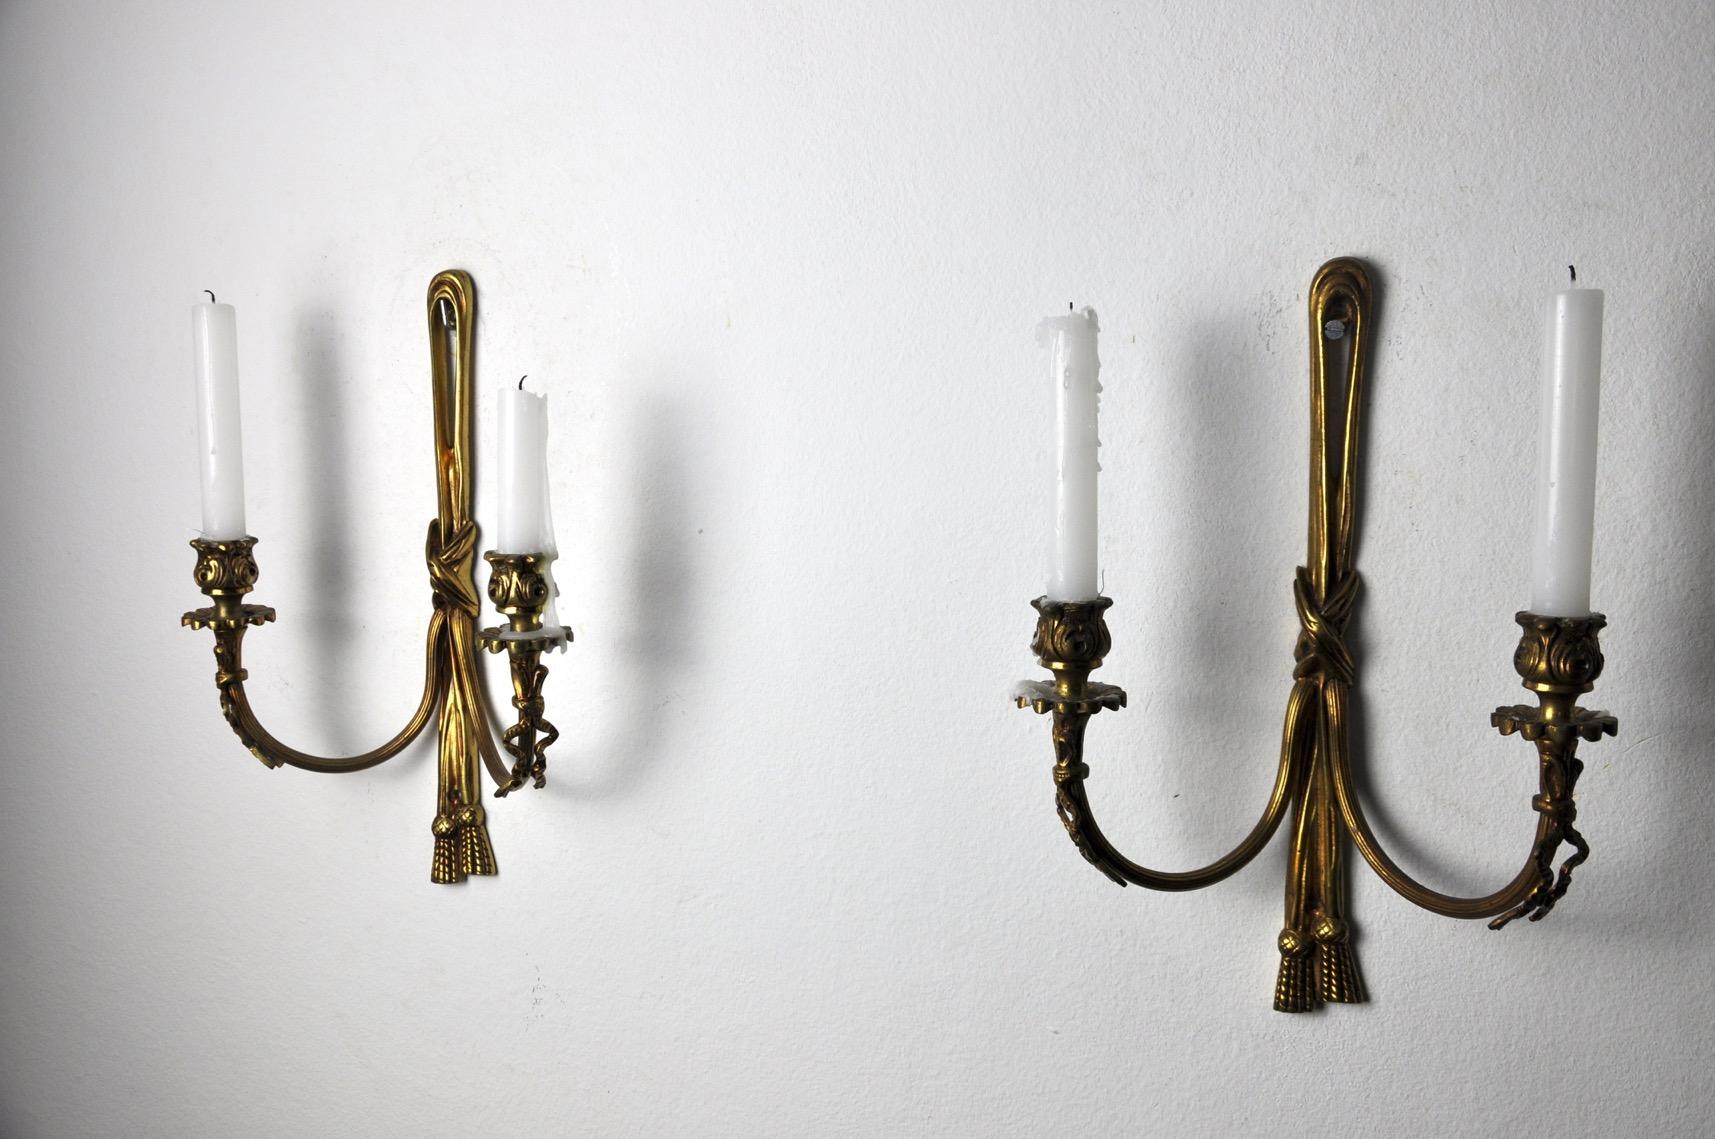 Sehr schönes Paar Kerzenständer aus Messing, entworfen und hergestellt in Frankreich in den 1980er Jahren. Einzigartige Objekte, die eine wunderbare Dekoration darstellen und einen echten Design-Touch in Ihr Interieur bringen. Referenzzeit: 469.

 